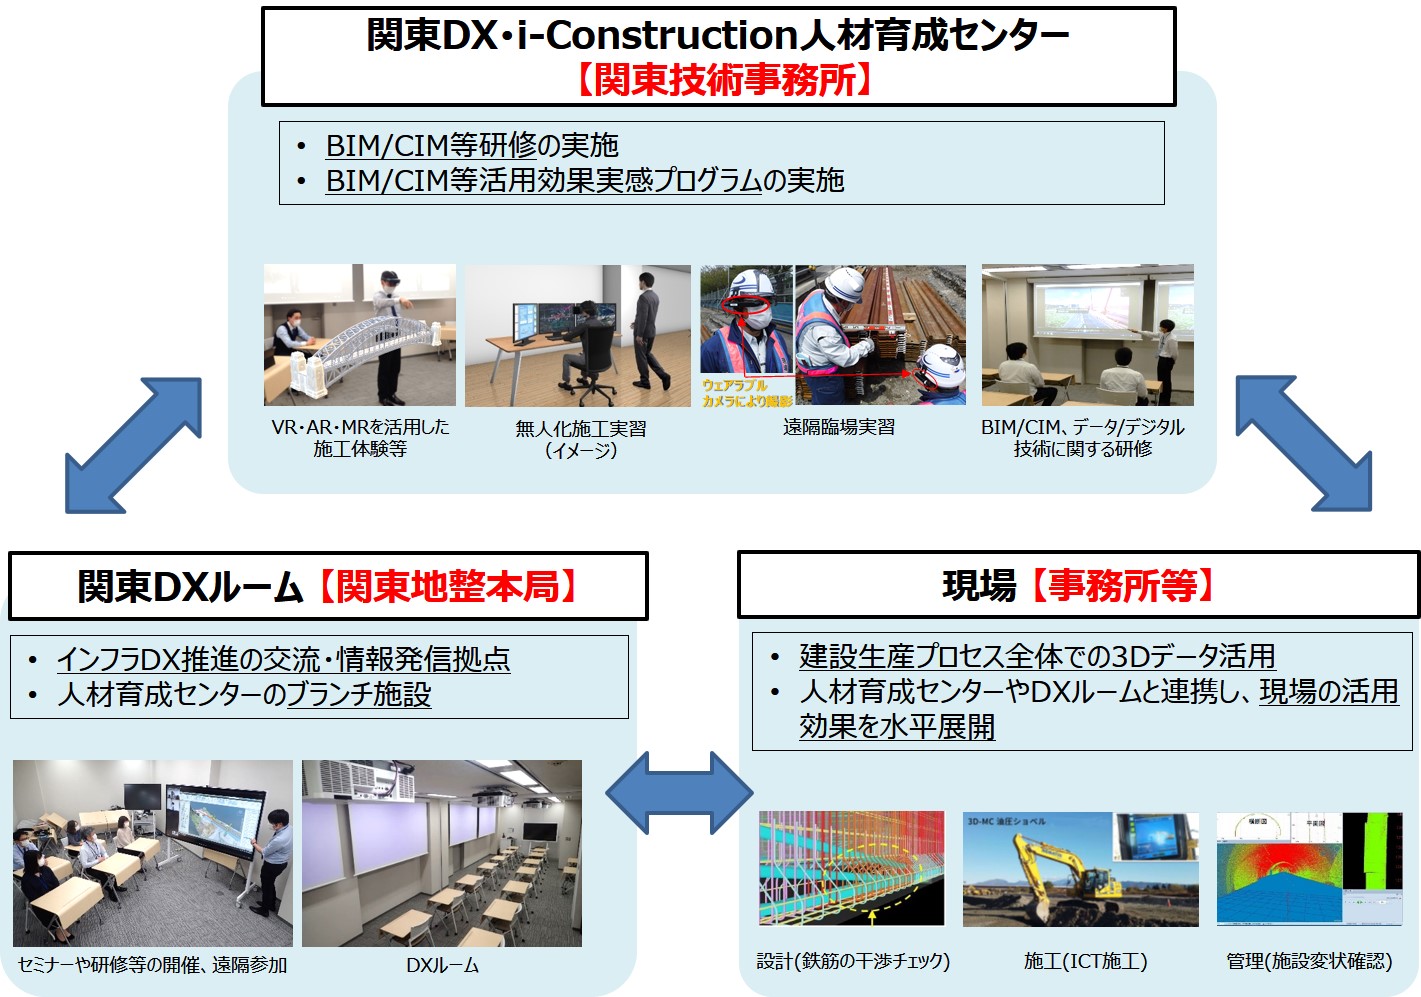 関東地方整備局におけるDX推進の体制について